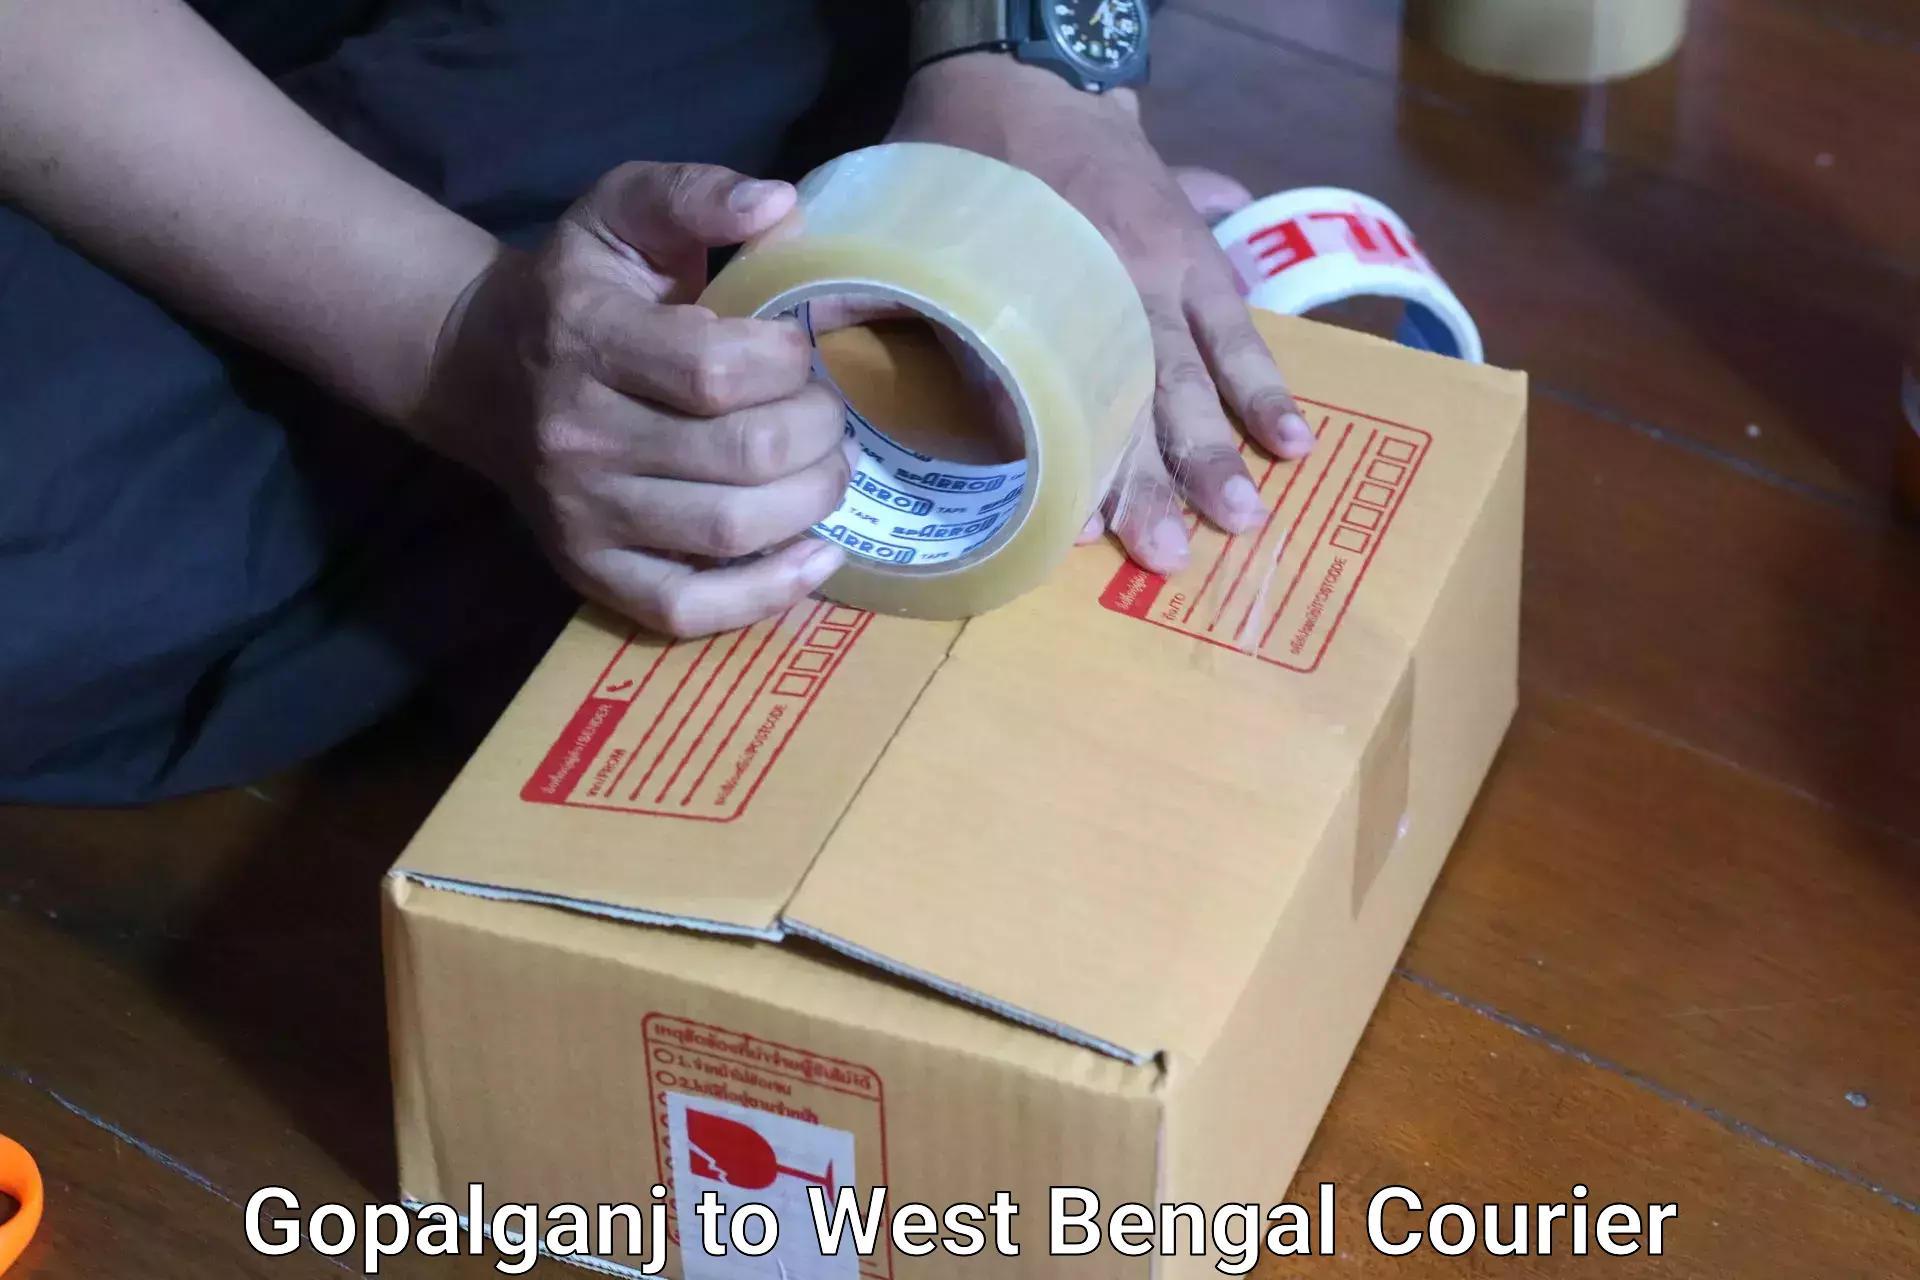 Baggage transport scheduler Gopalganj to West Bengal